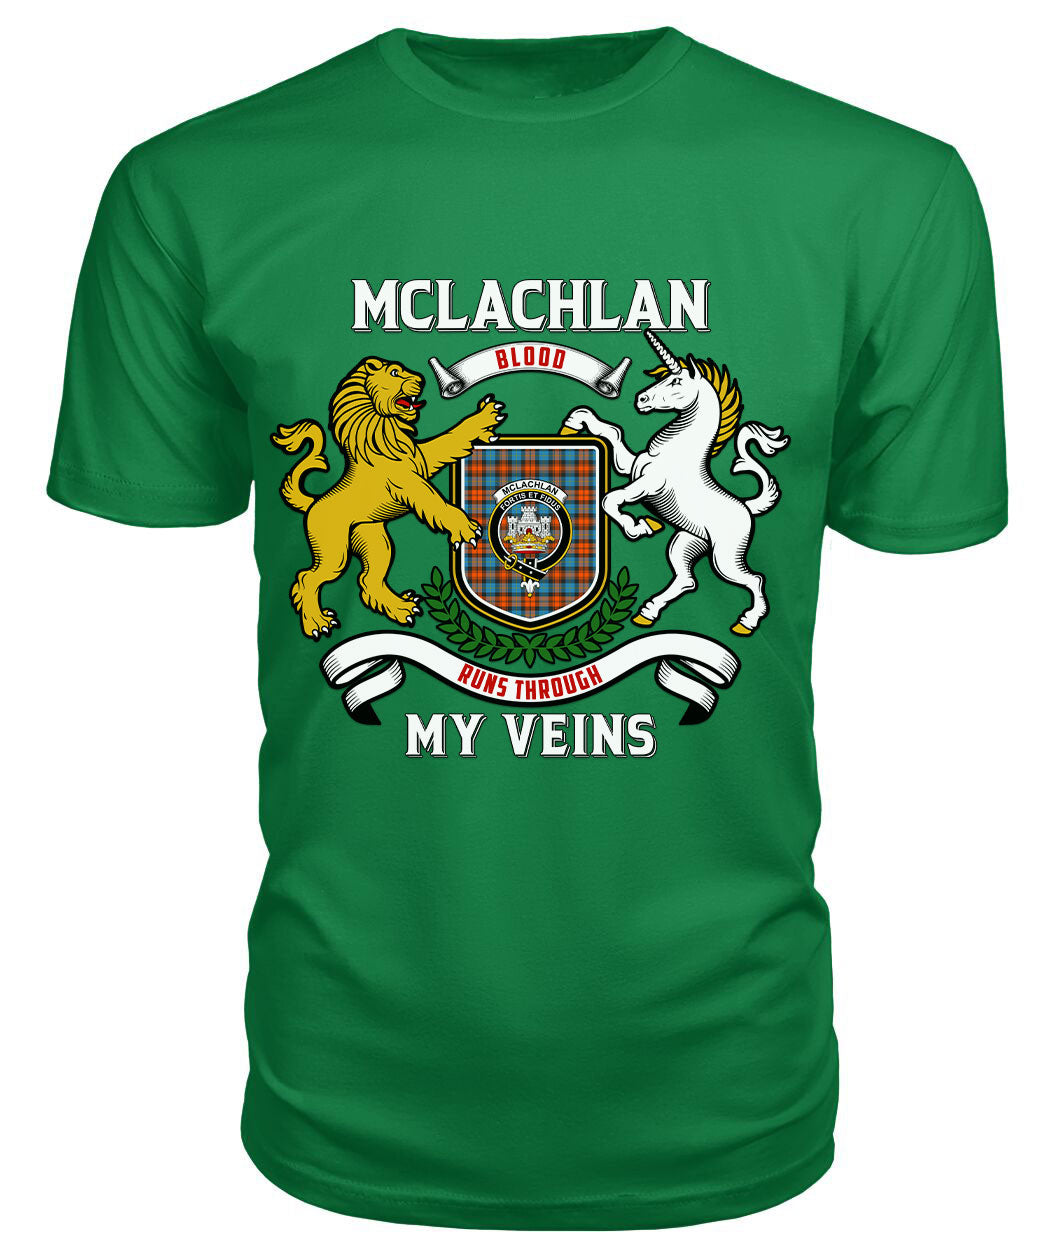 McLachlan Ancient Tartan Crest 2D T-shirt - Blood Runs Through My Veins Style